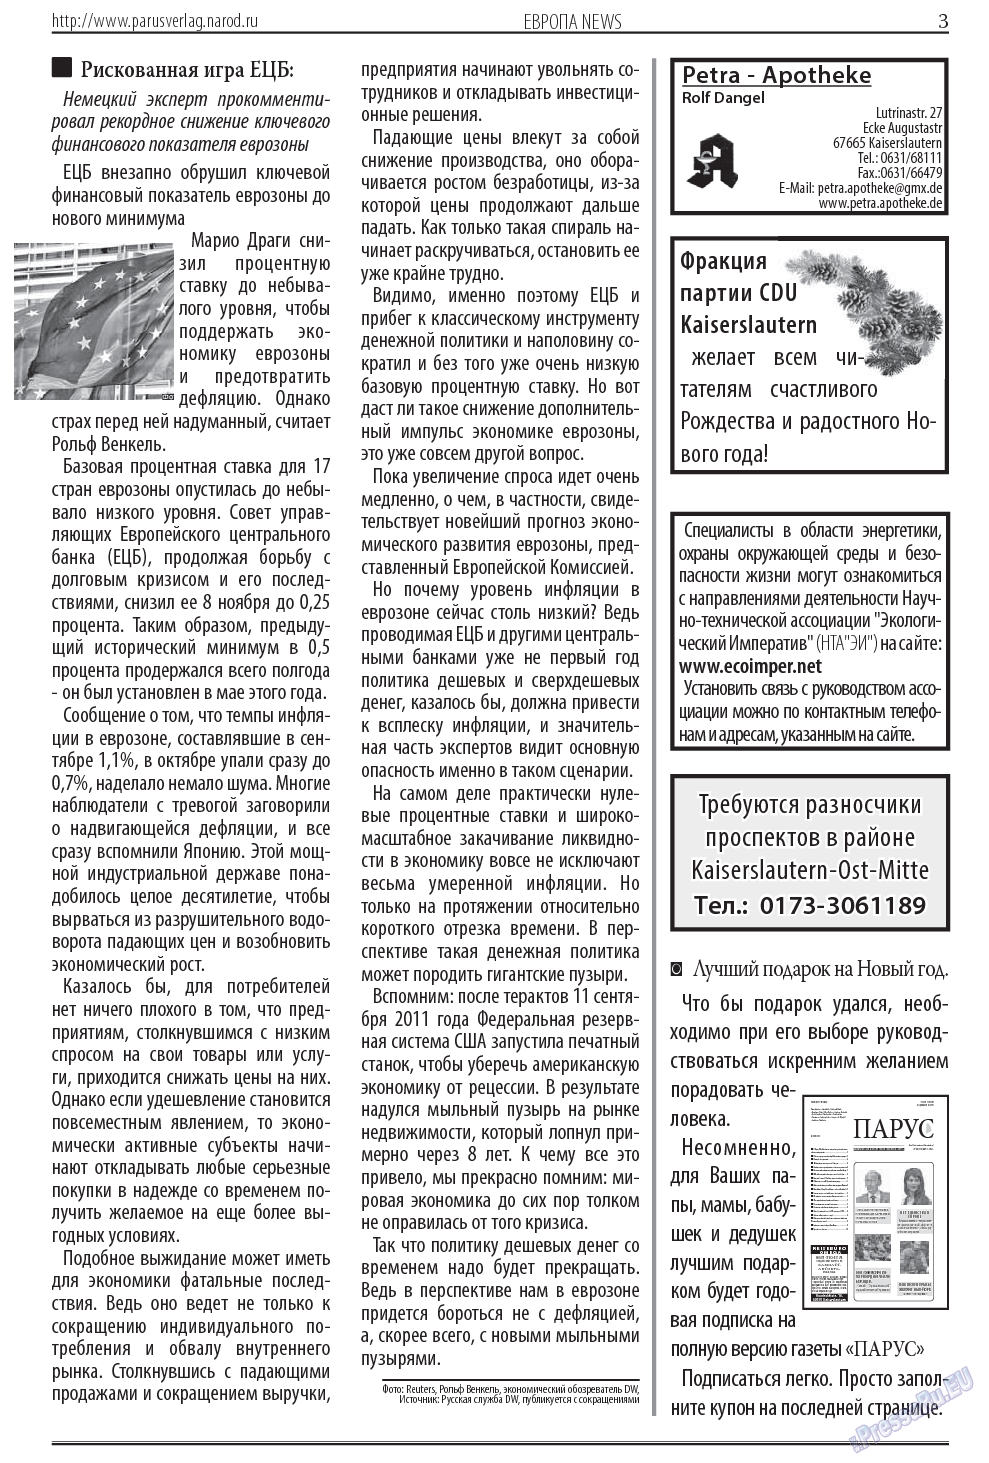 Парус (газета). 2013 год, номер 12, стр. 3